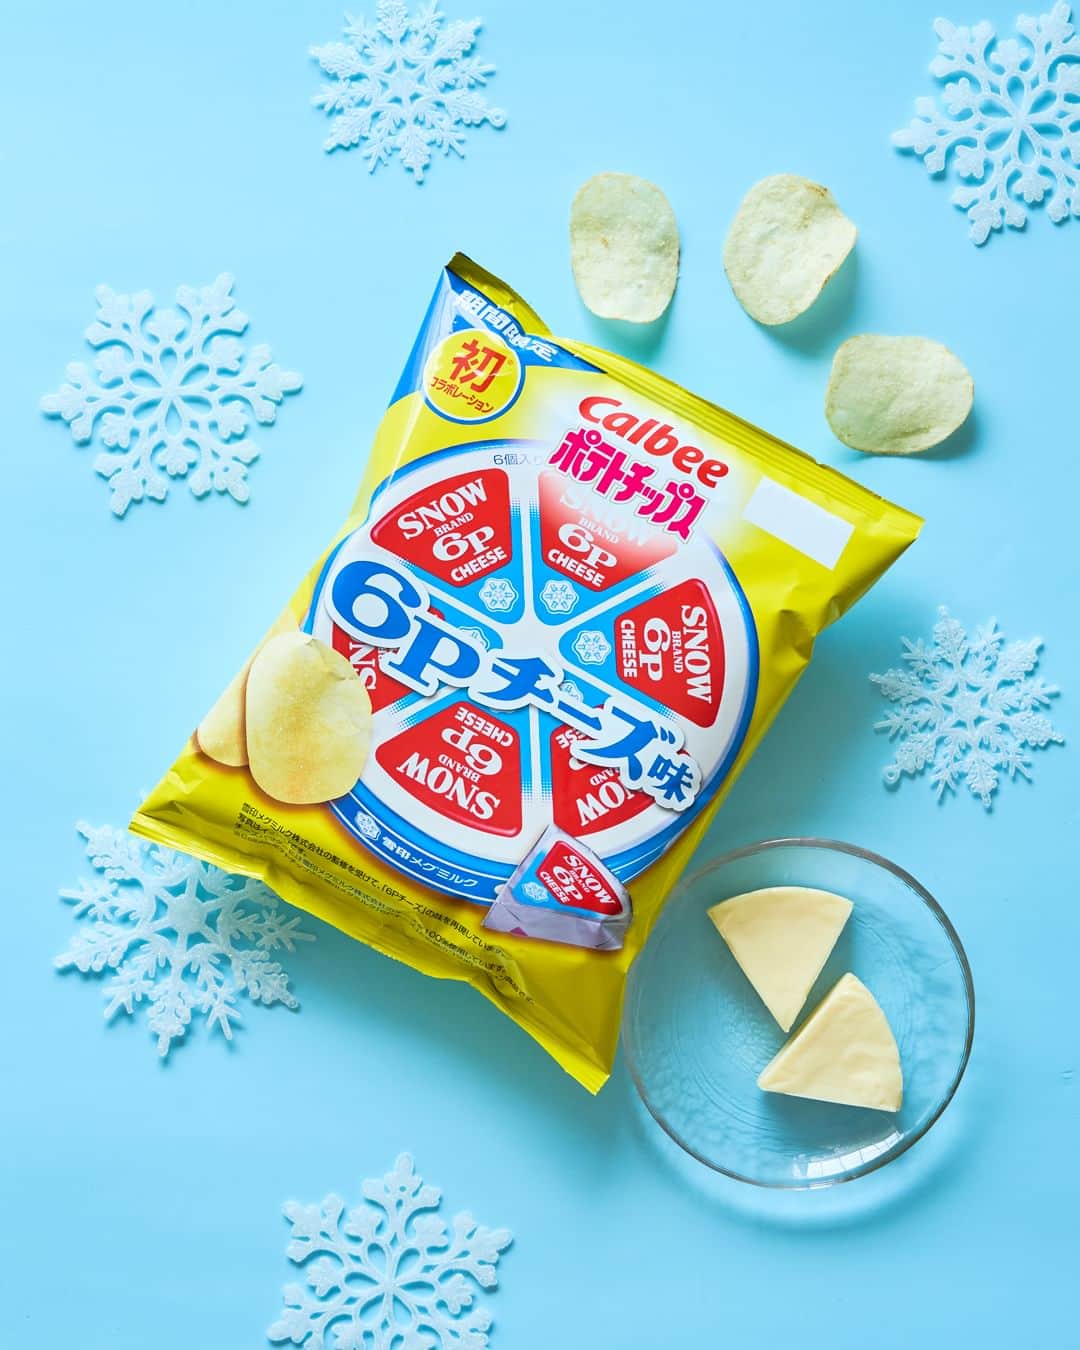 カルビーのインスタグラム：「『ポテトチップス ６Pチーズ味』 雪印メグミルク「６Ｐ(ロッピー)チーズ」とのコラボレーション商品です！ ※チーズパウダーには雪印メグミルク株式会社のチーズを100％使用しています。 ＊全国のコンビ二にて期間限定販売中です。 @megmilk.snowbrand  #calbee #カルビー #ポテトチップス  #コラボレーション #雪印メグミルク  #6Pチーズ #チーズ #コンビニ  #期間限定 #チーズ味  #おやつ #おつまみ #おいしい  #チーズ好きな人と繋がりたい  #チーズ大好き  #cheese #ワイン #ビール #クラフトビール #IPA #ほっとひと息 #おうち飲み  #おうちカフェ #カフェタイム  #ティータイム #ひとり時間 #じゃがいも #ポテト #potatochips」